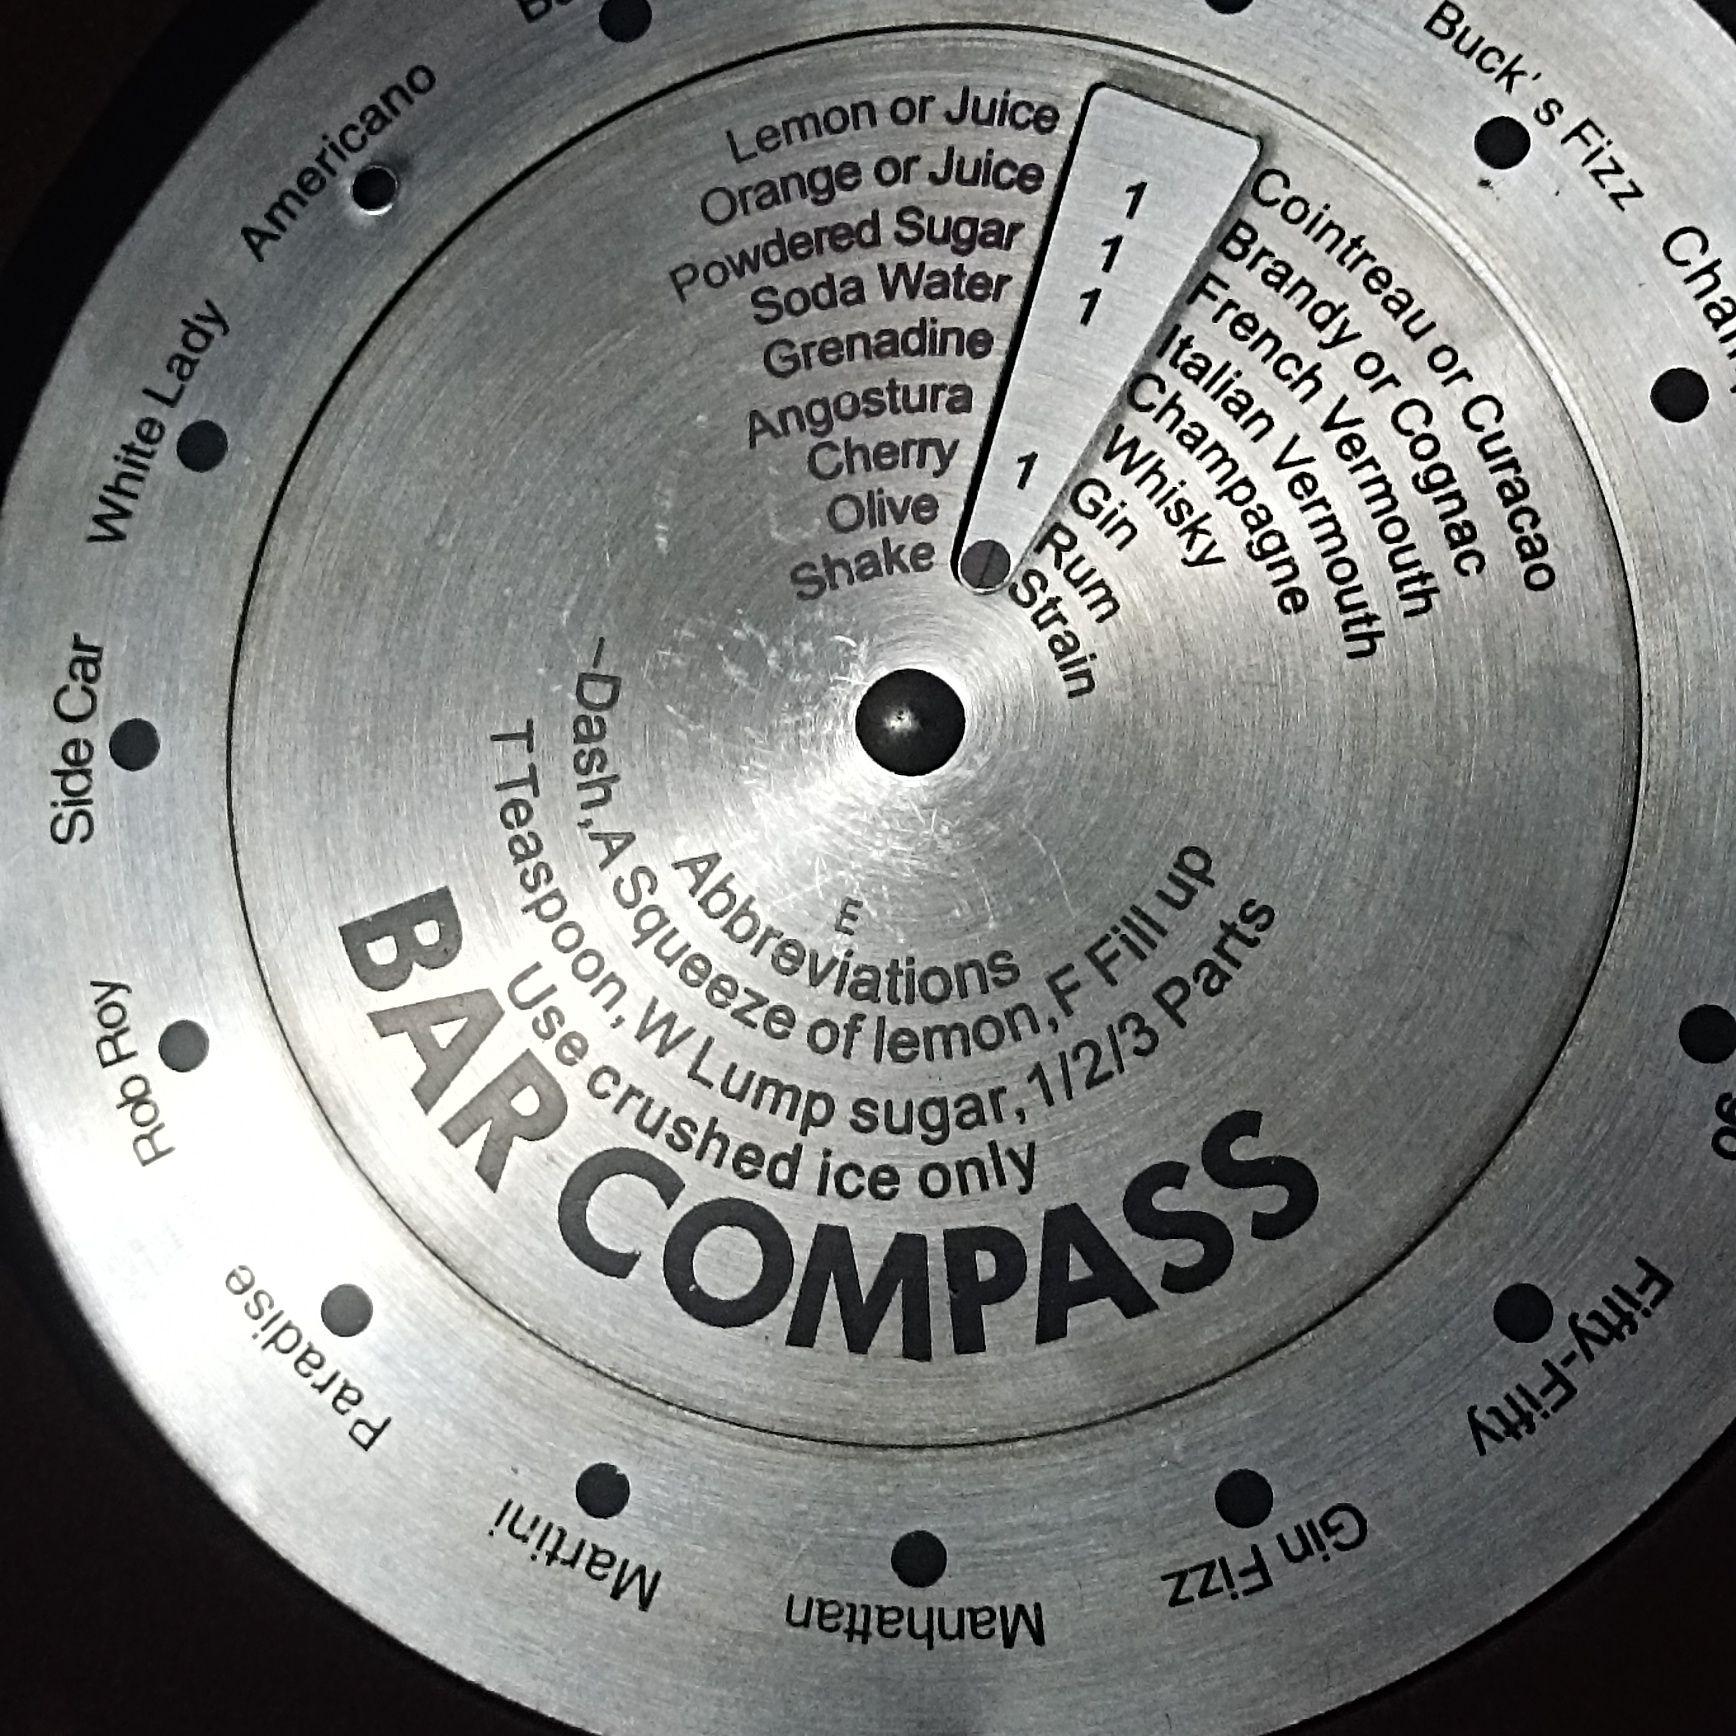 Bar Compass todo completo e novo em caixa